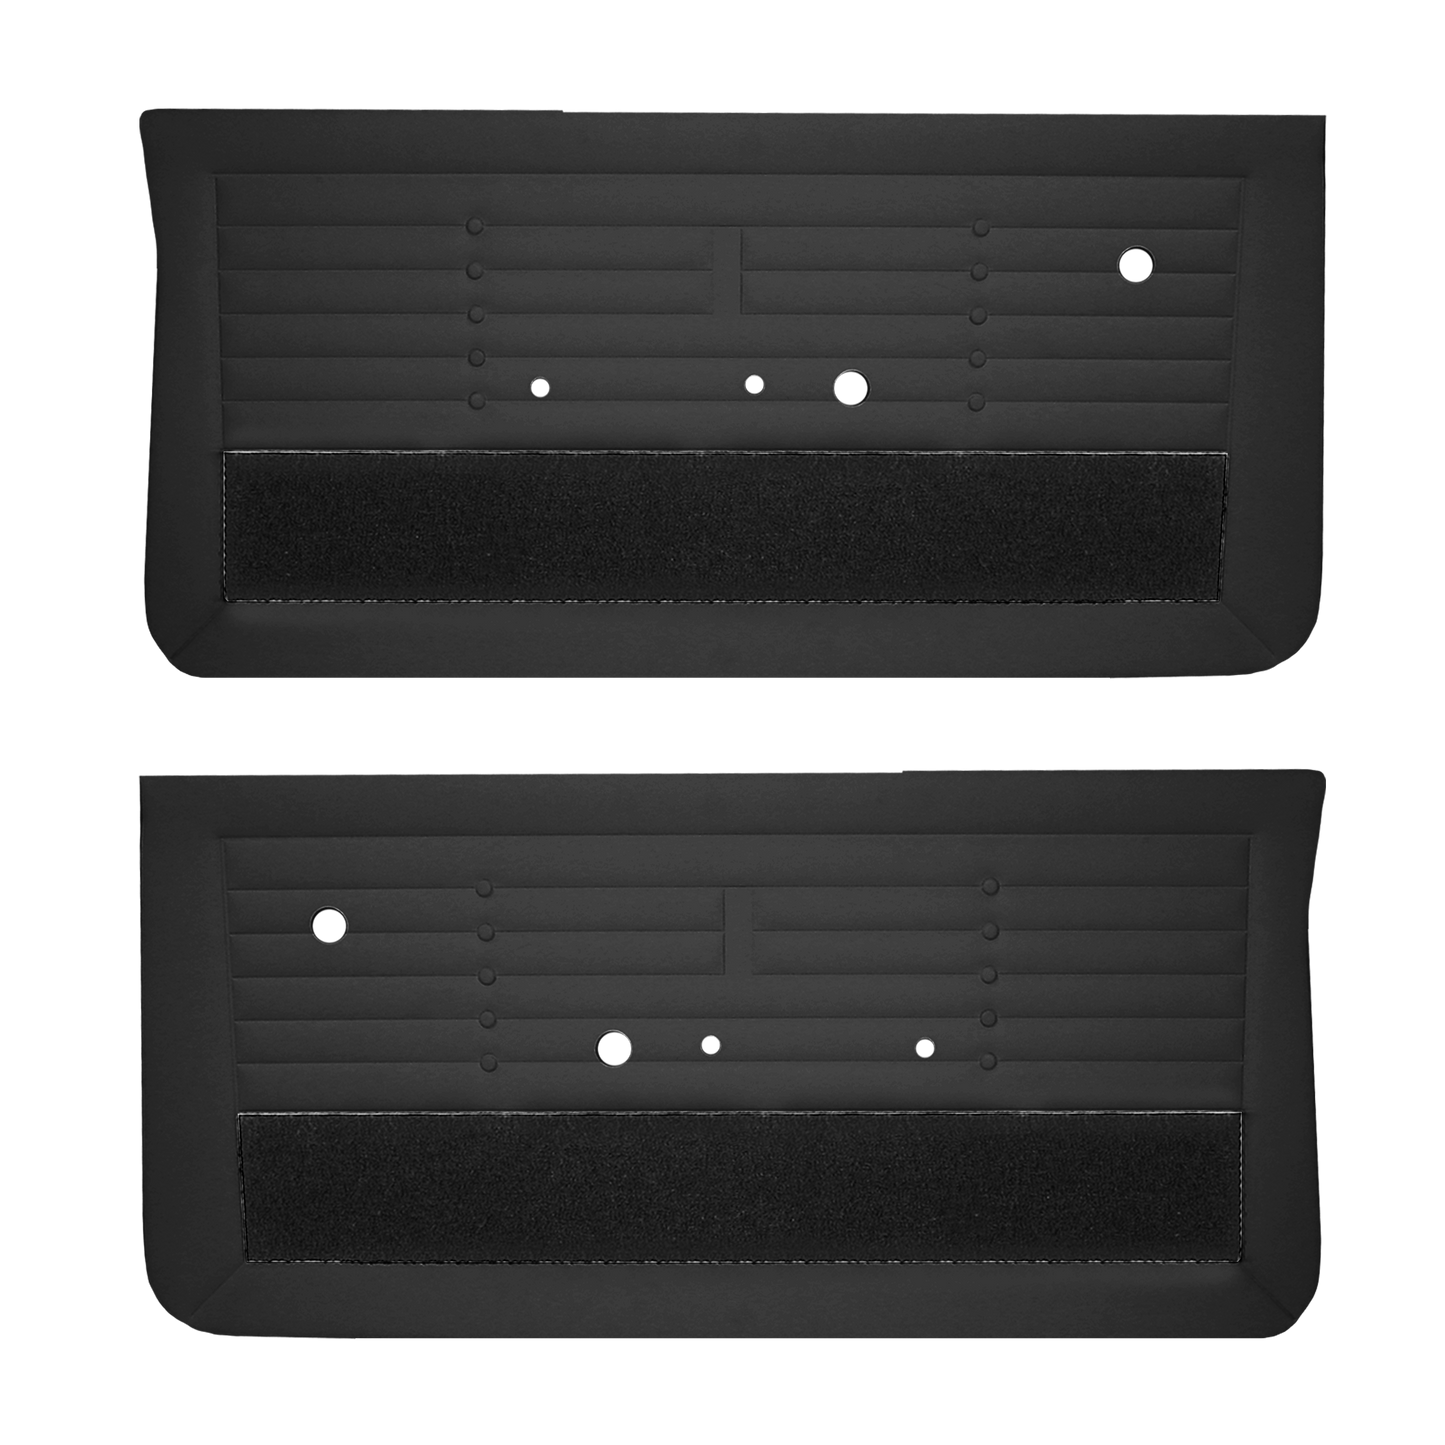 65 SKYLARK/GS FRONT DOOR PANEL - BLACK